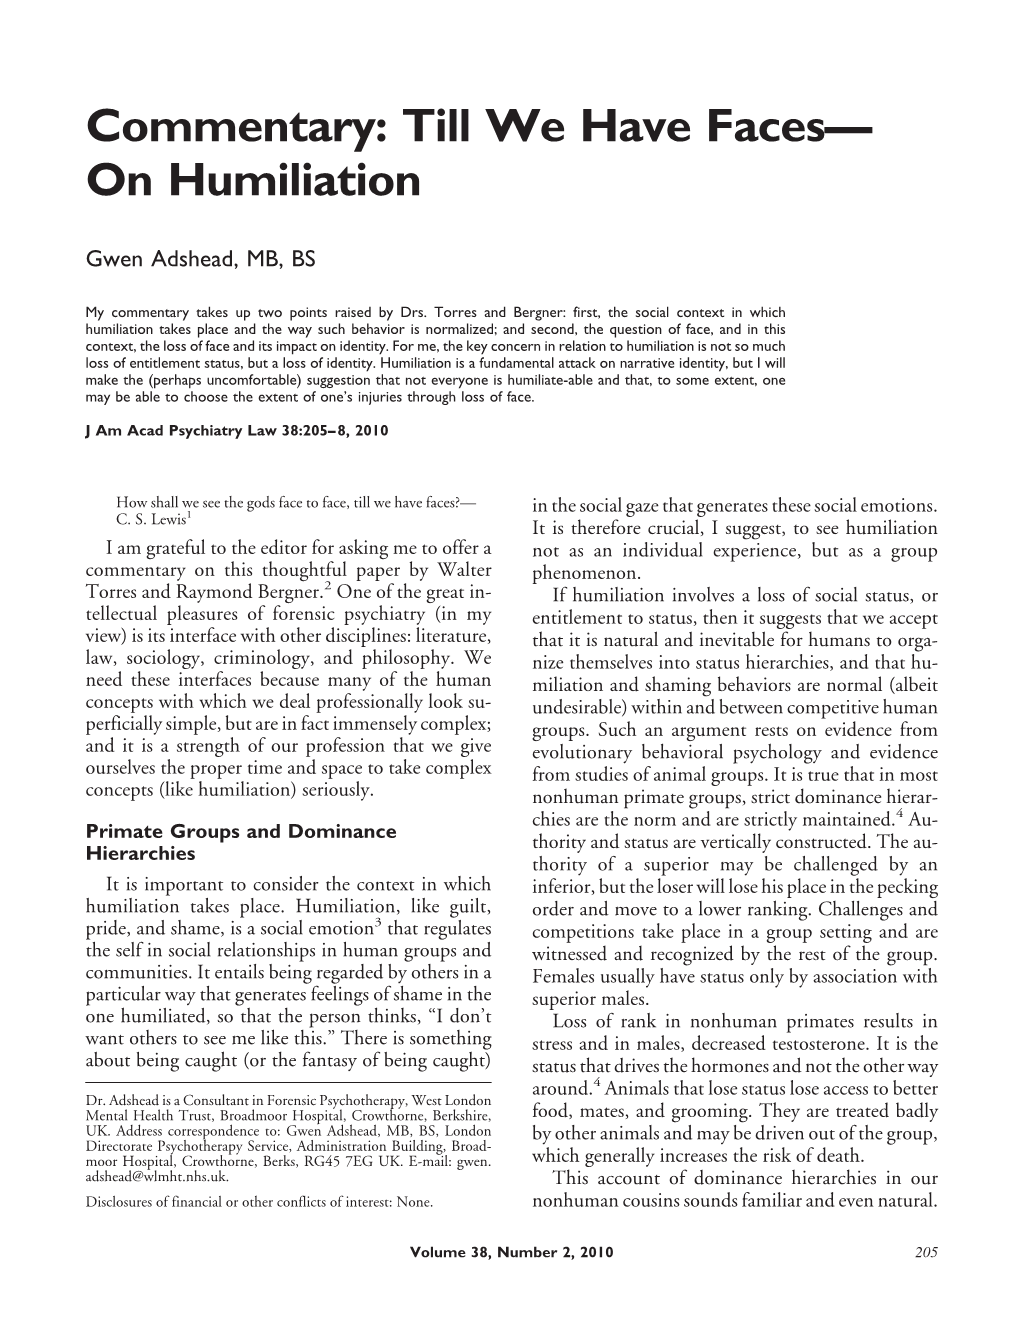 On Humiliation